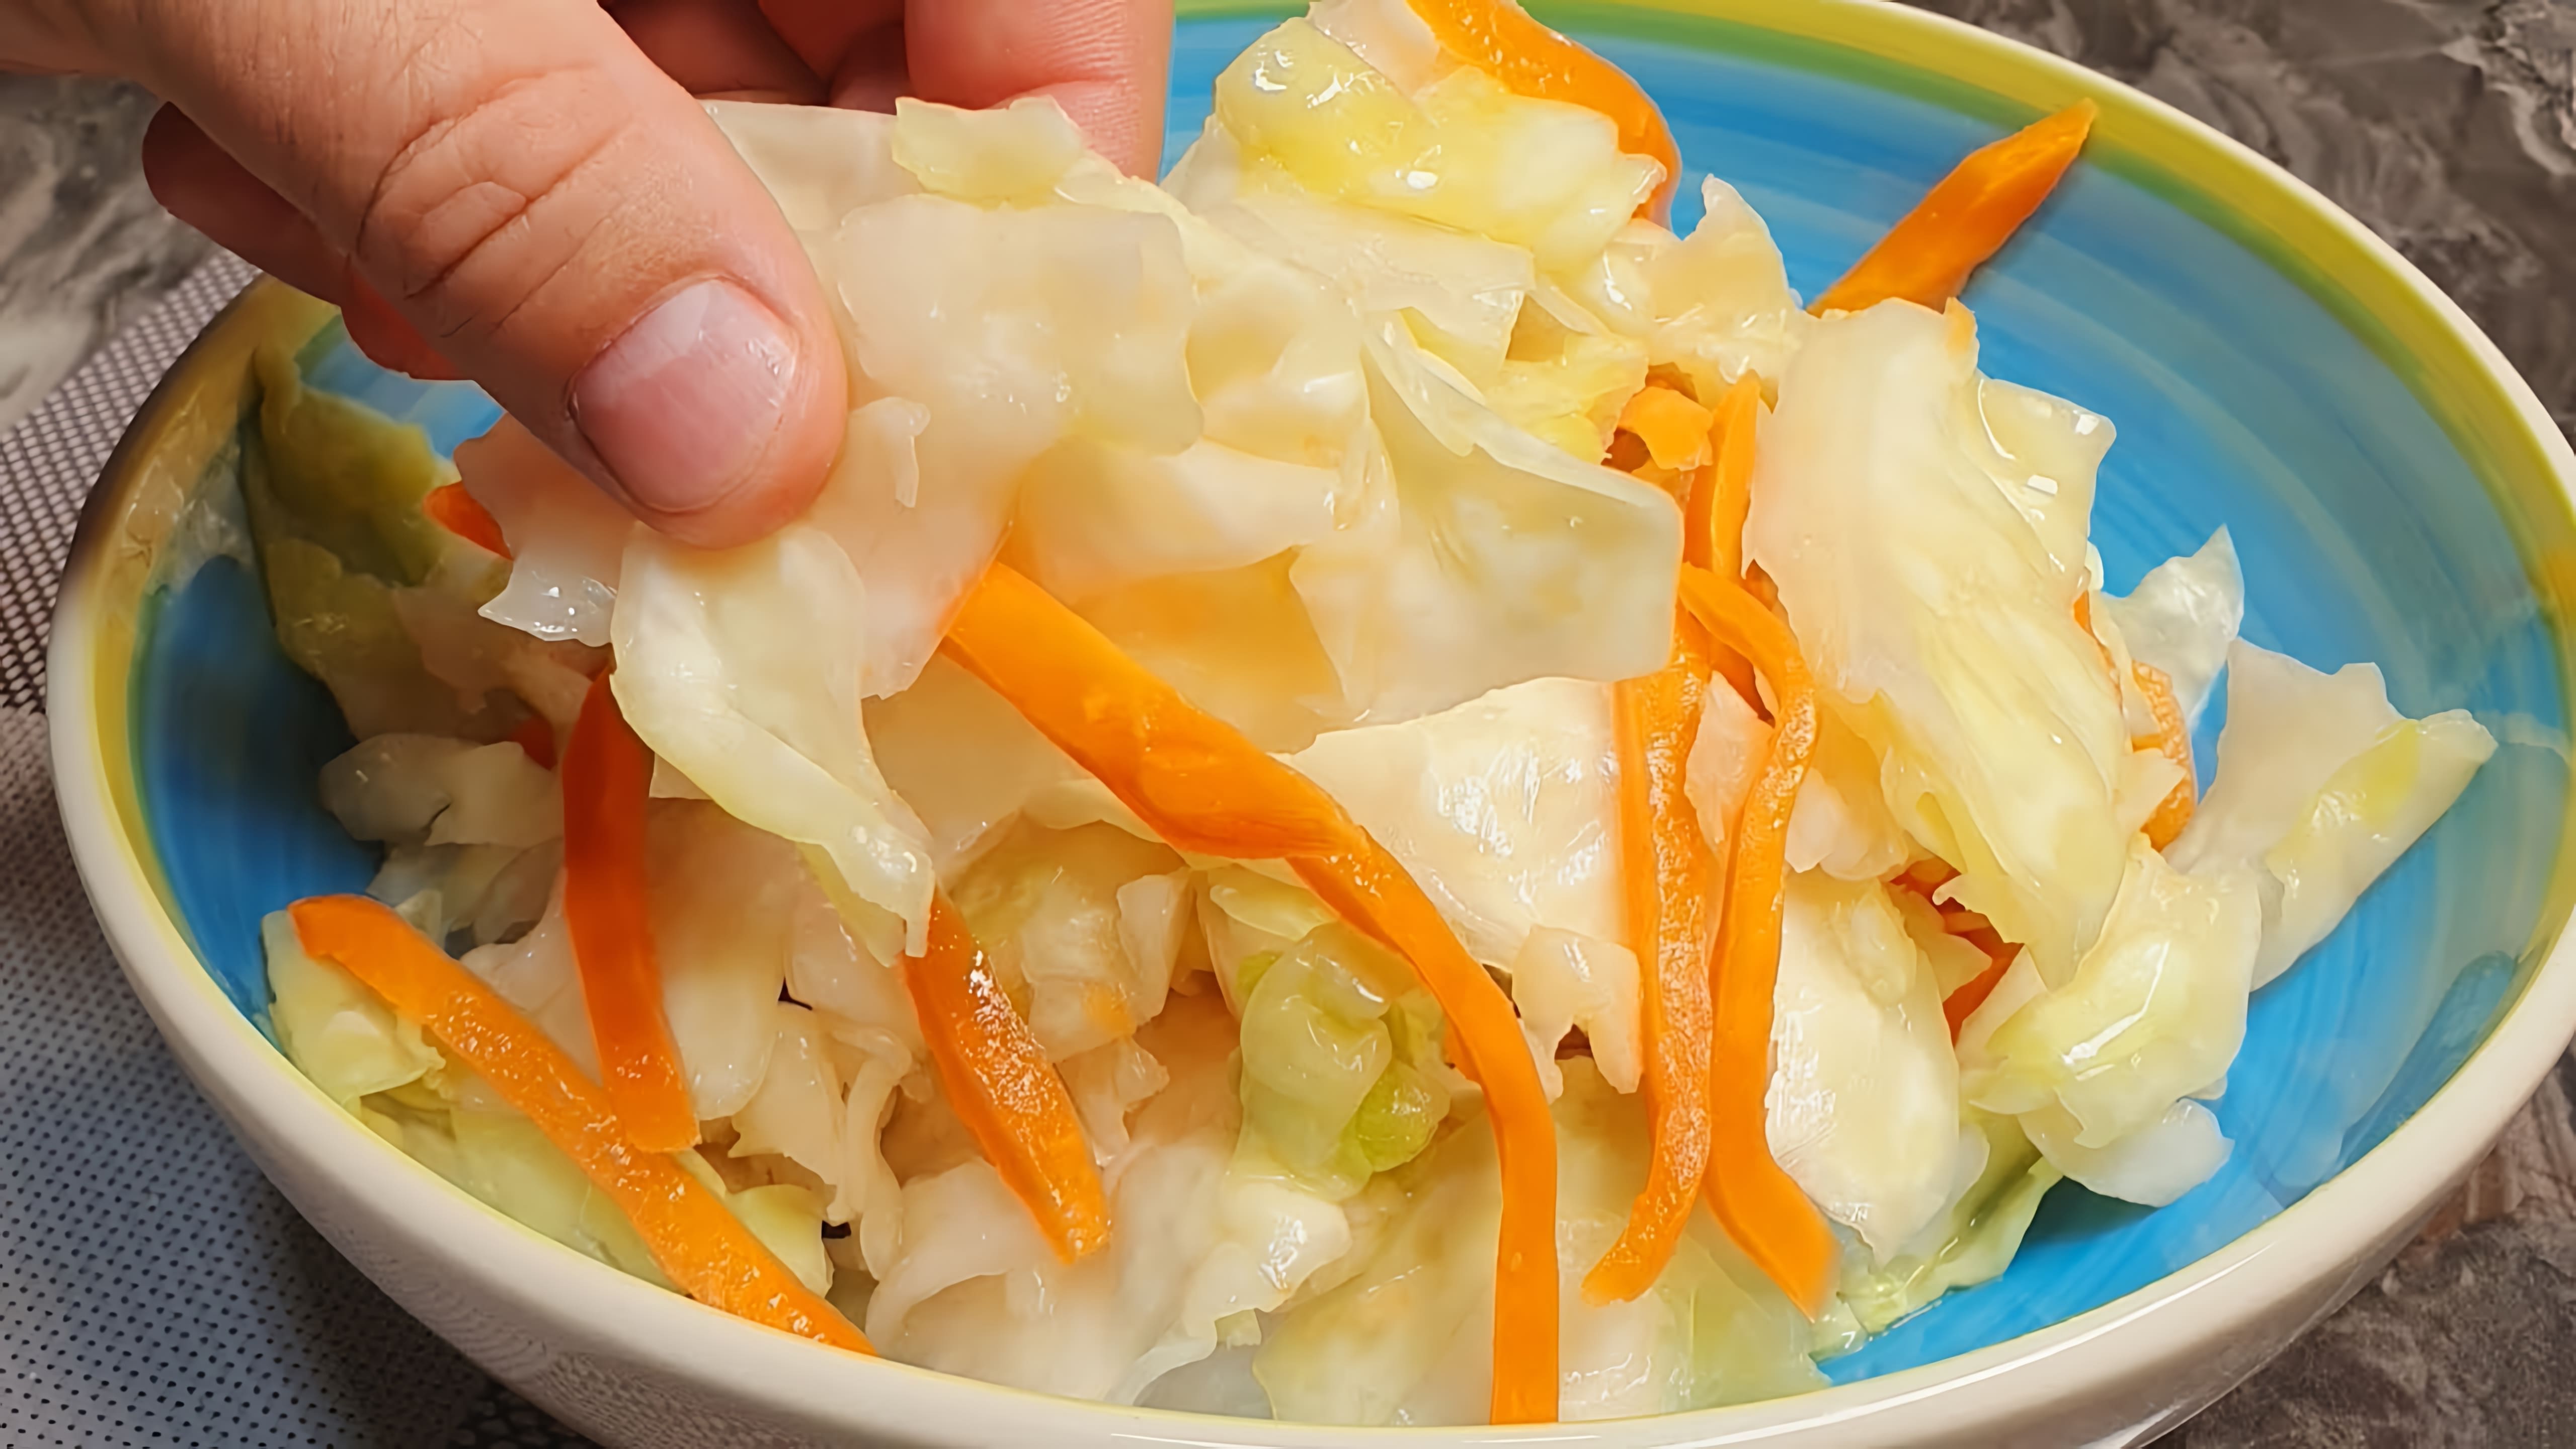 В этом видео бабушка делится своим рецептом приготовления капусты на зиму